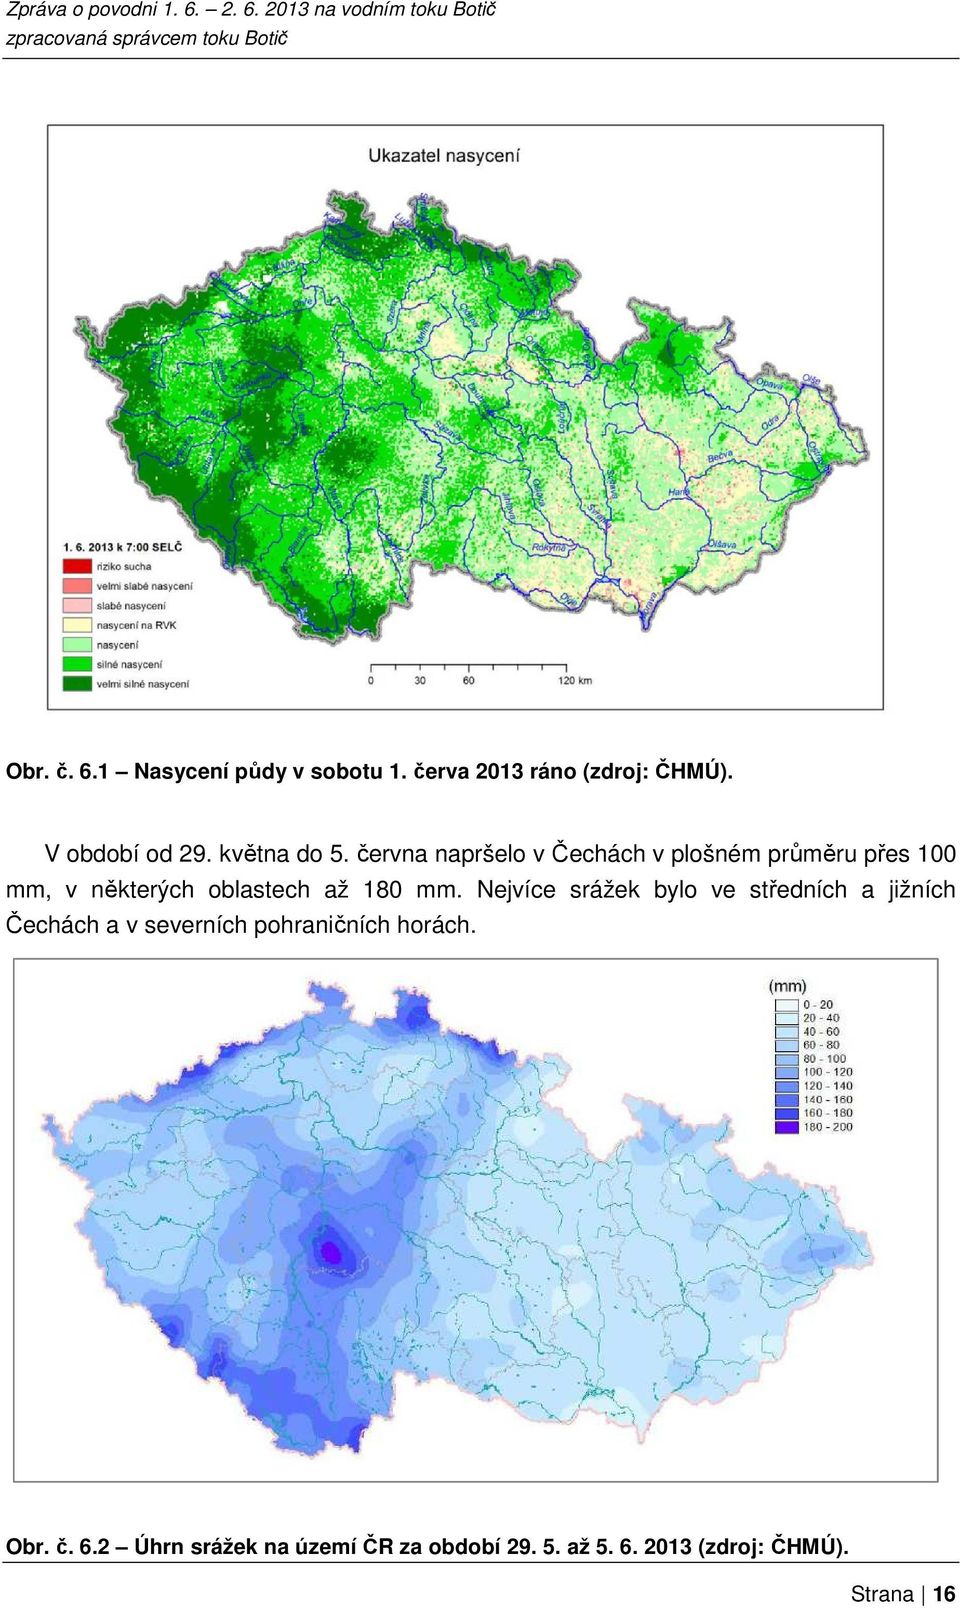 června napršelo v Čechách v plošném průměru přes 100 mm, v některých oblastech až 180 mm.